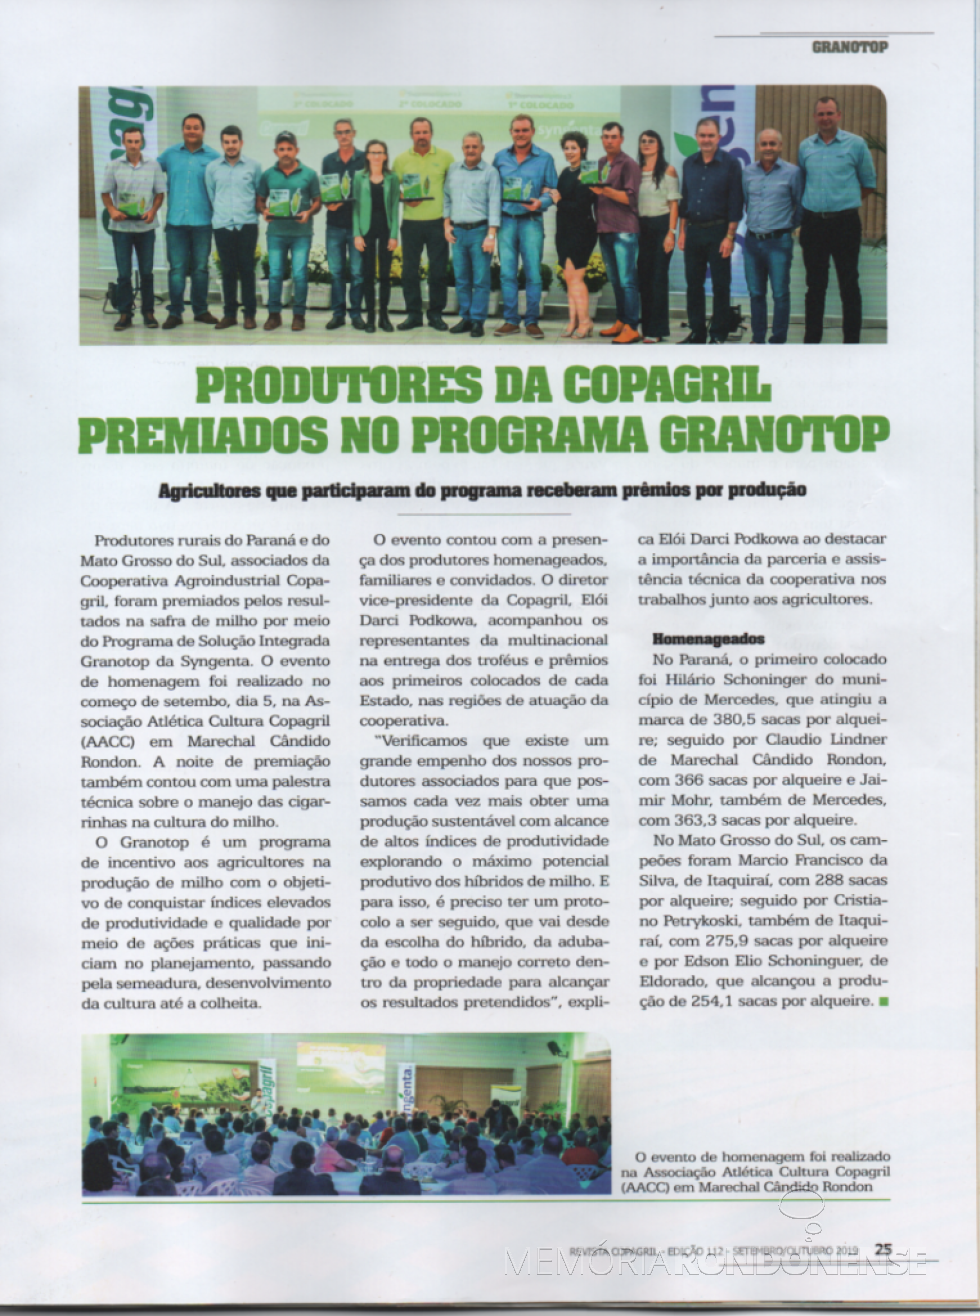 || Recorte da Revista Copagril nº 112 com os premiados do Granotop 2019.
Imagem: Acervo Revista Copagril referida - FOTO 9 -